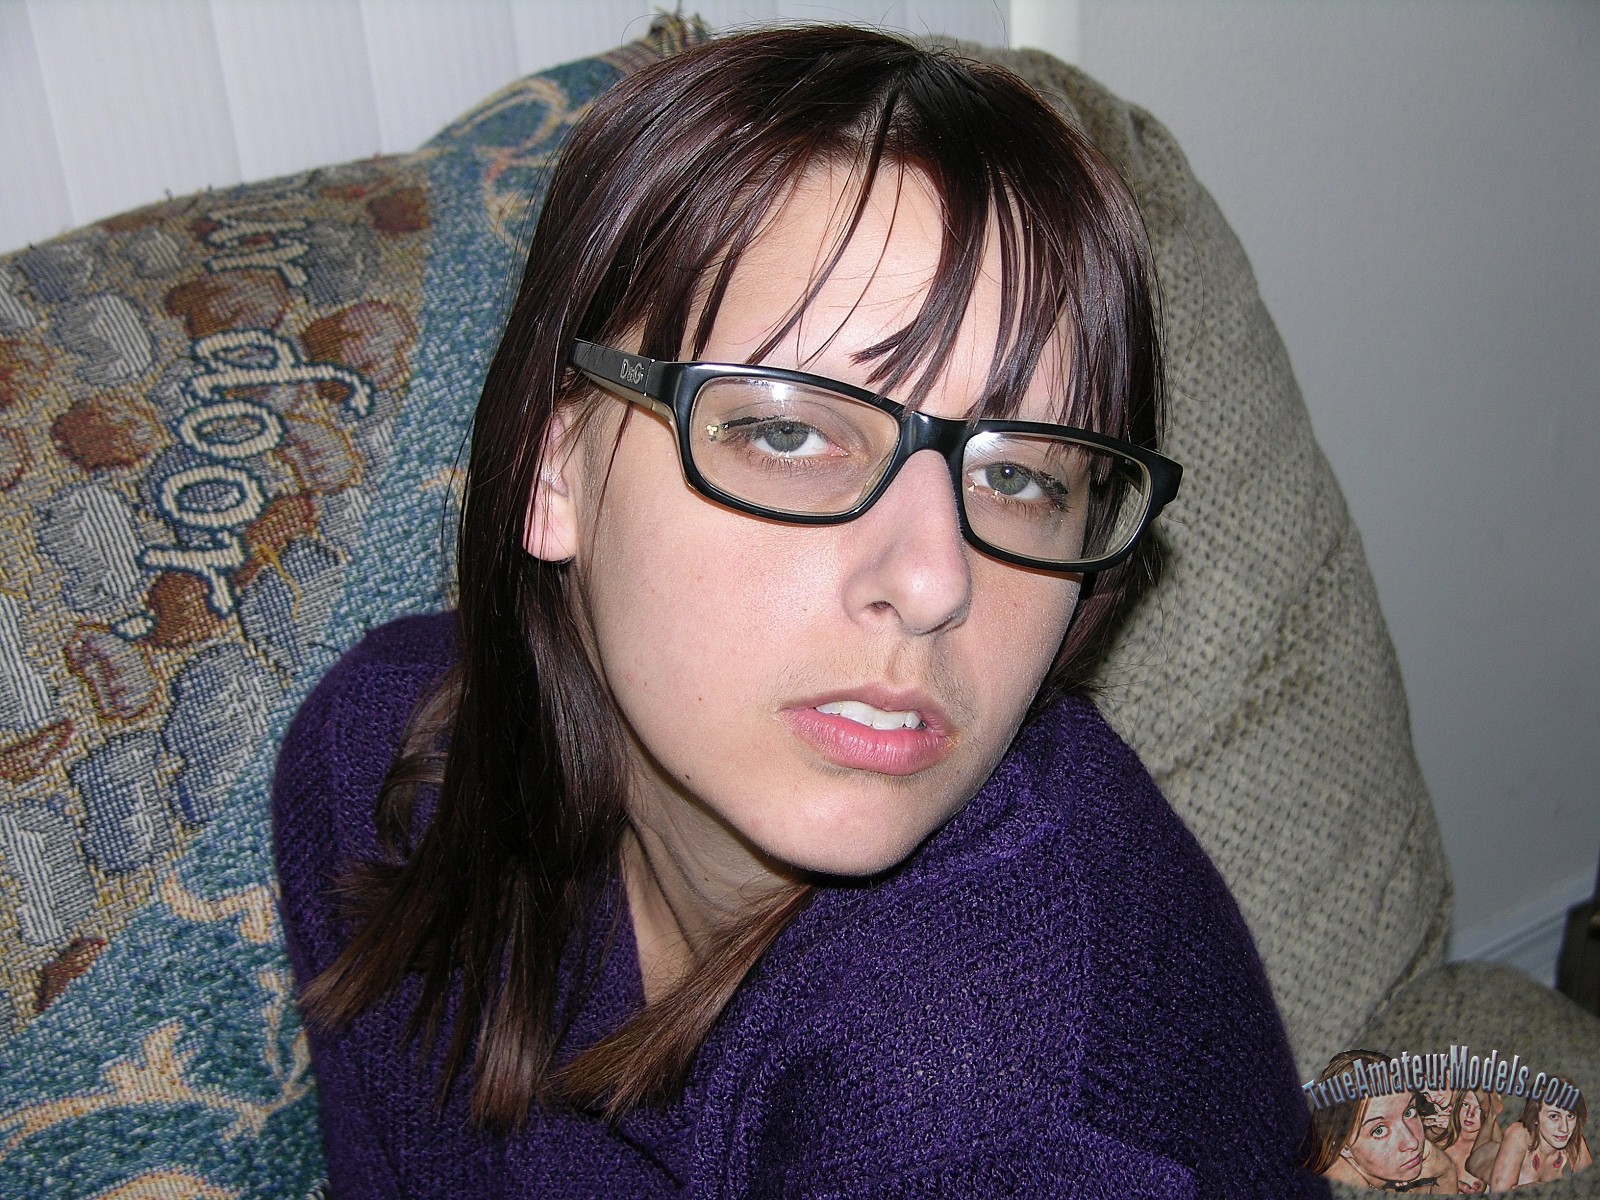 xpics - sex in glasses Amateur nerd shows hairy asshole